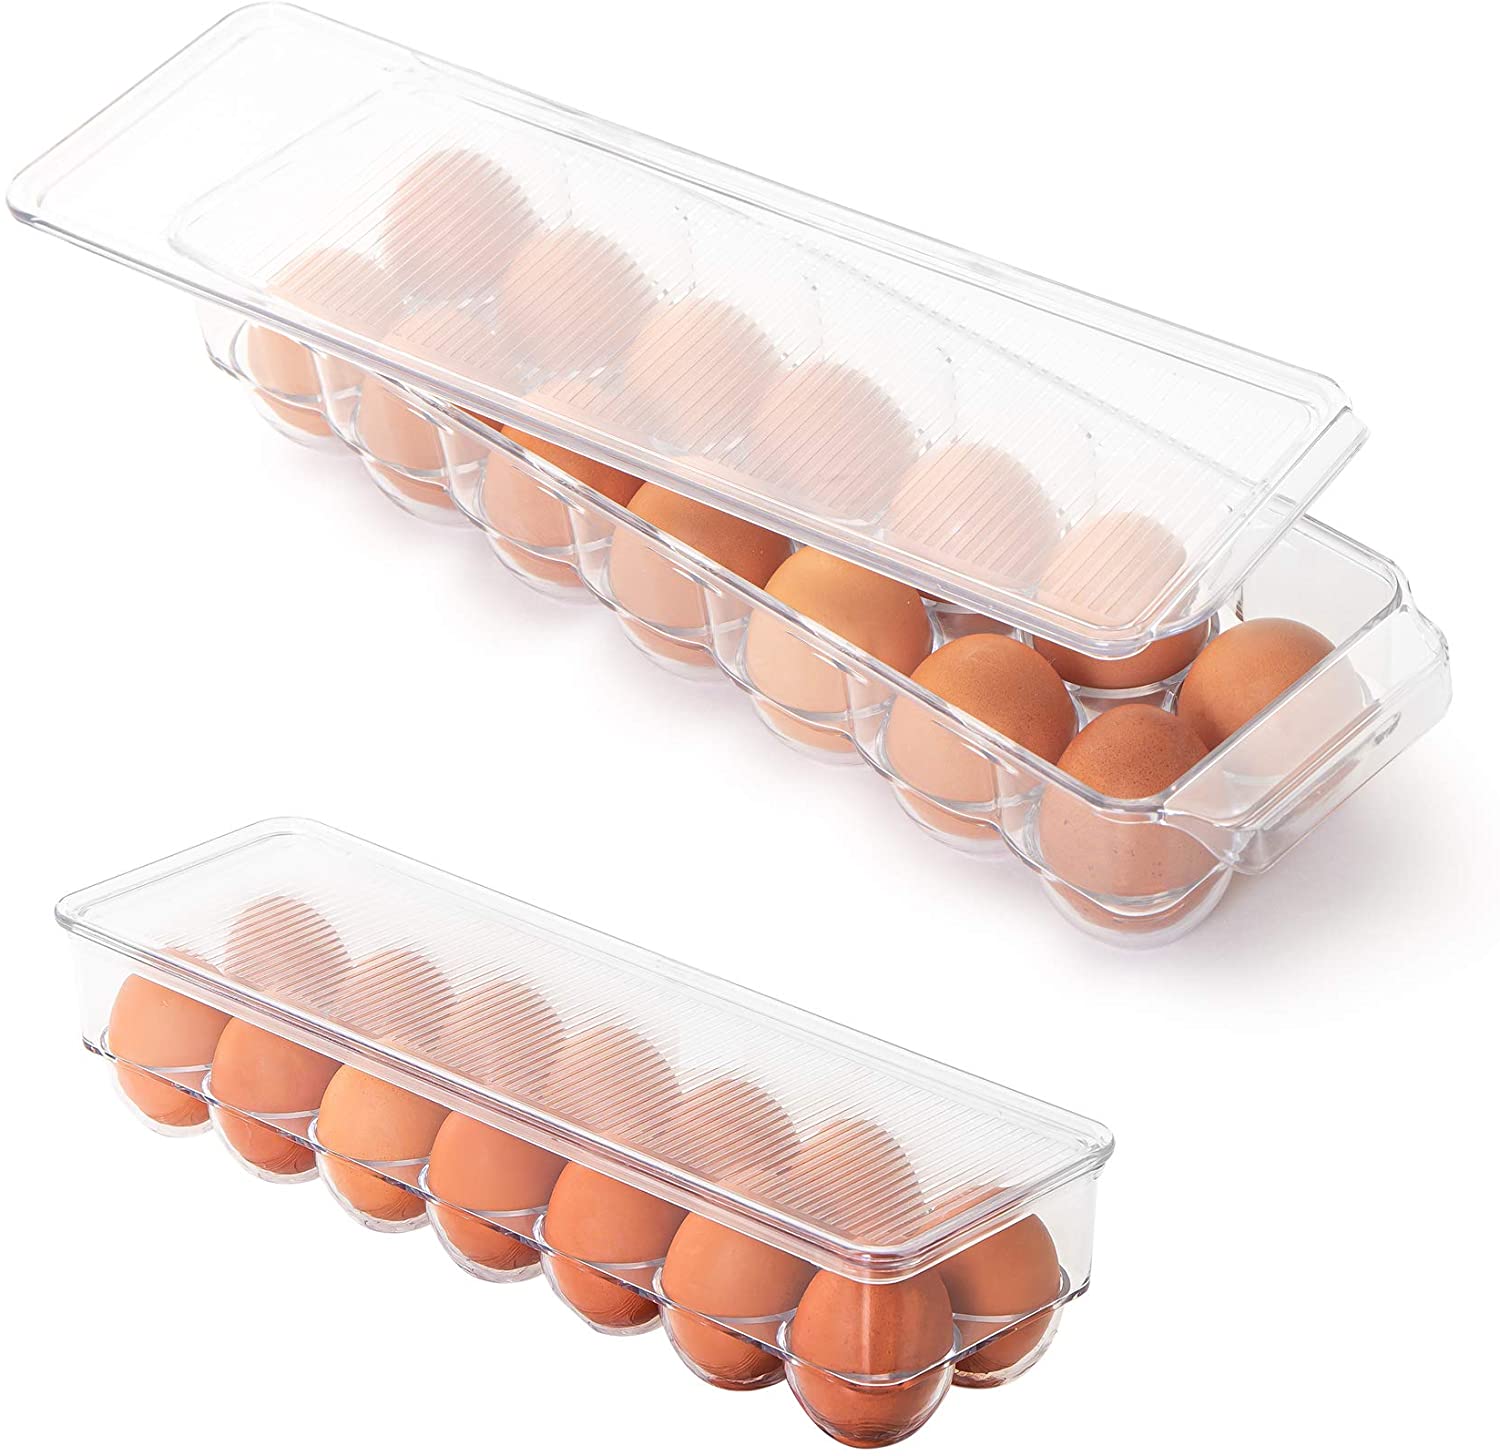 https://www.shopsmartdesign.com/cdn/shop/products/stackable-refrigerator-egg-holder-bin-with-handle-and-lid-smart-design-kitchen-8465491as2-incrementing-number-624568.jpg?v=1679335885